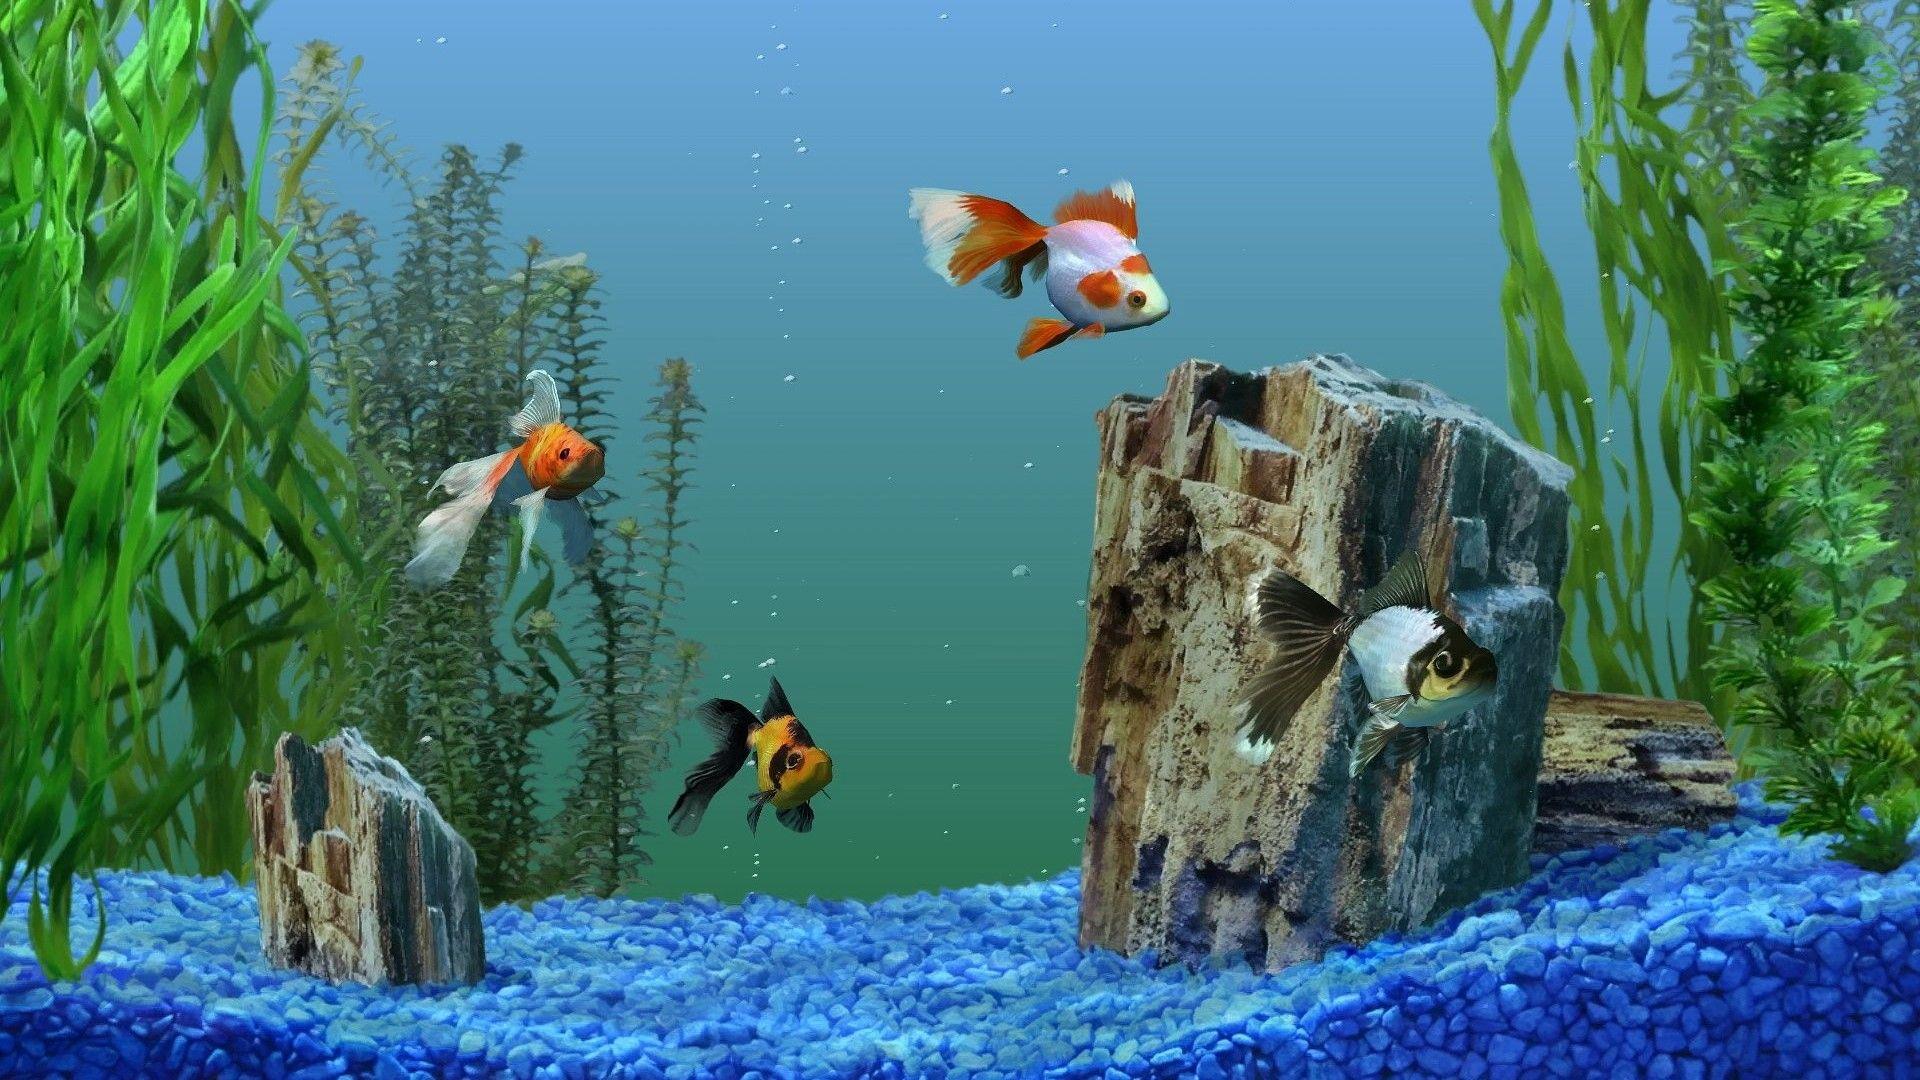 Aquarium fish picture wallpaper. PC